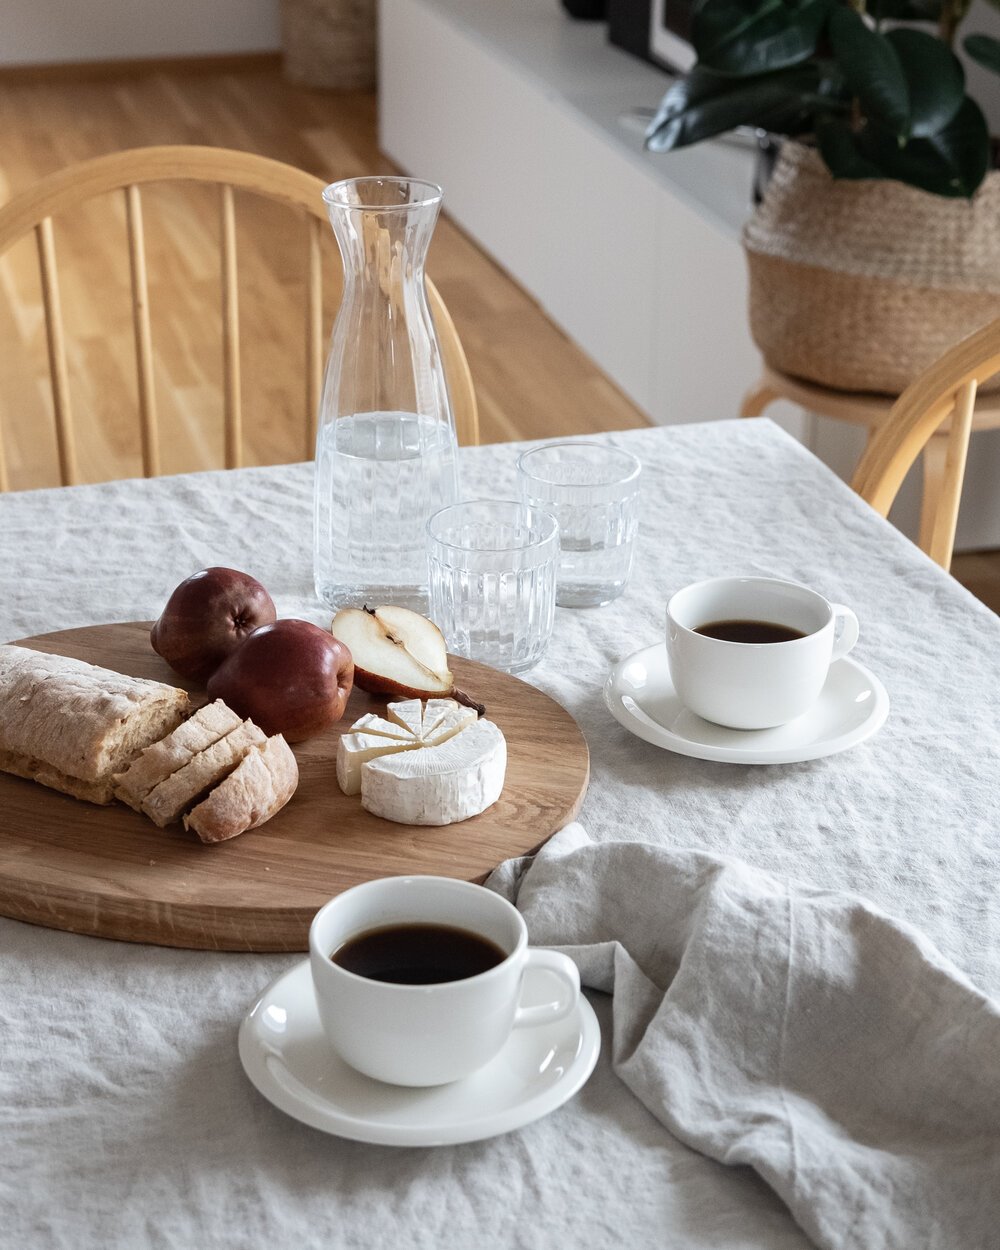 Mesa de desayuno cafe tazas blancas mantel de lino blanco y tabla de quesos